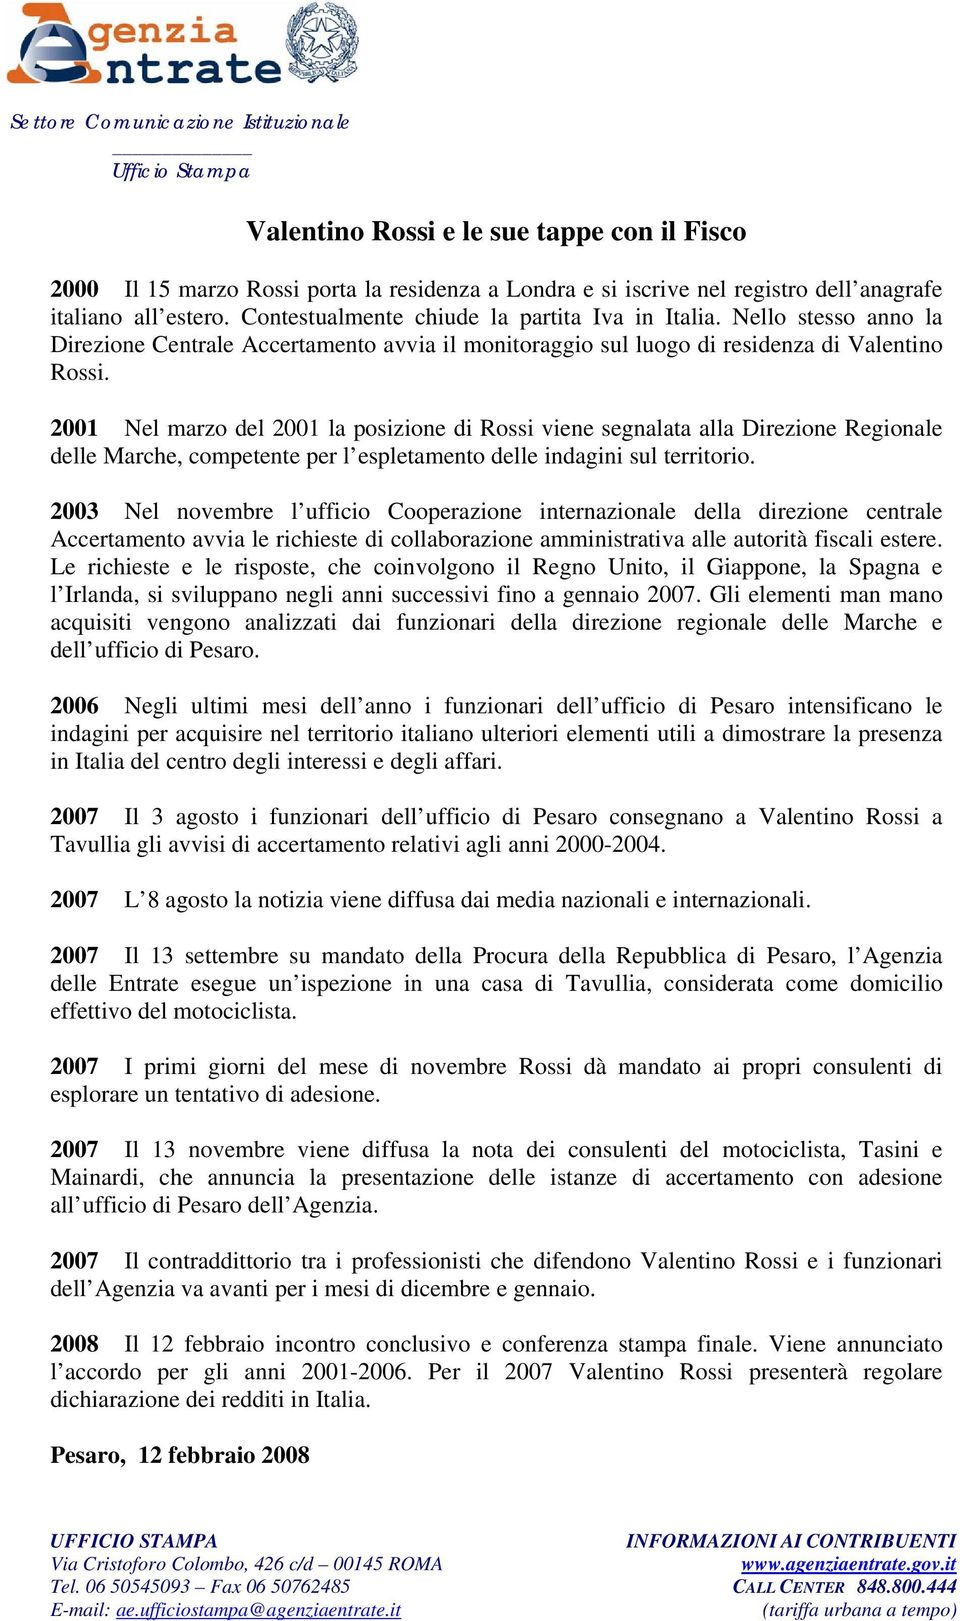 2001 Nel marzo del 2001 la posizione di Rossi viene segnalata alla Direzione Regionale delle Marche, competente per l espletamento delle indagini sul territorio.